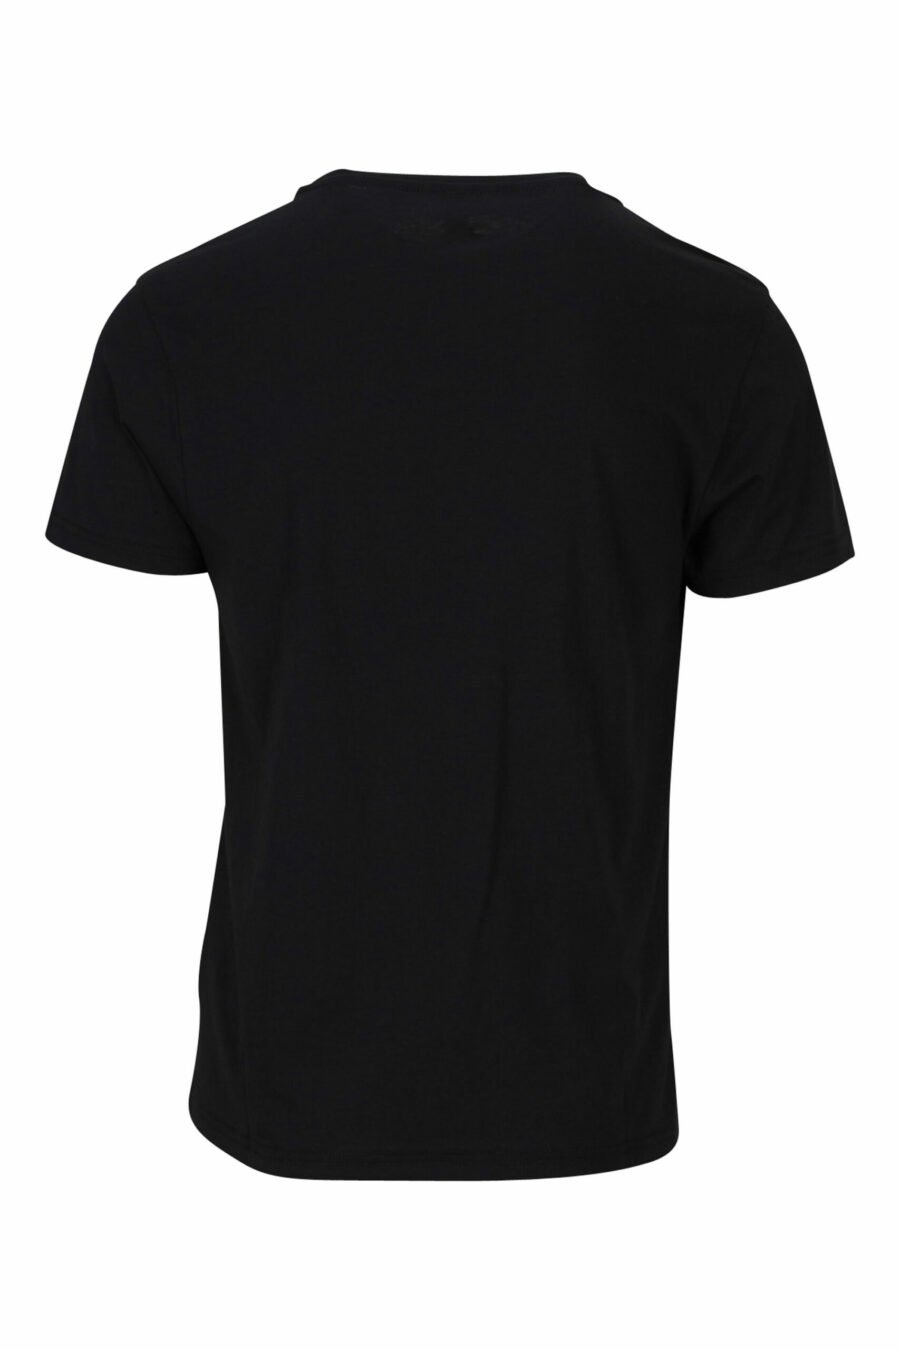 T-shirt noir avec logo monochrome sur les épaules - 889316992724 1 scaled